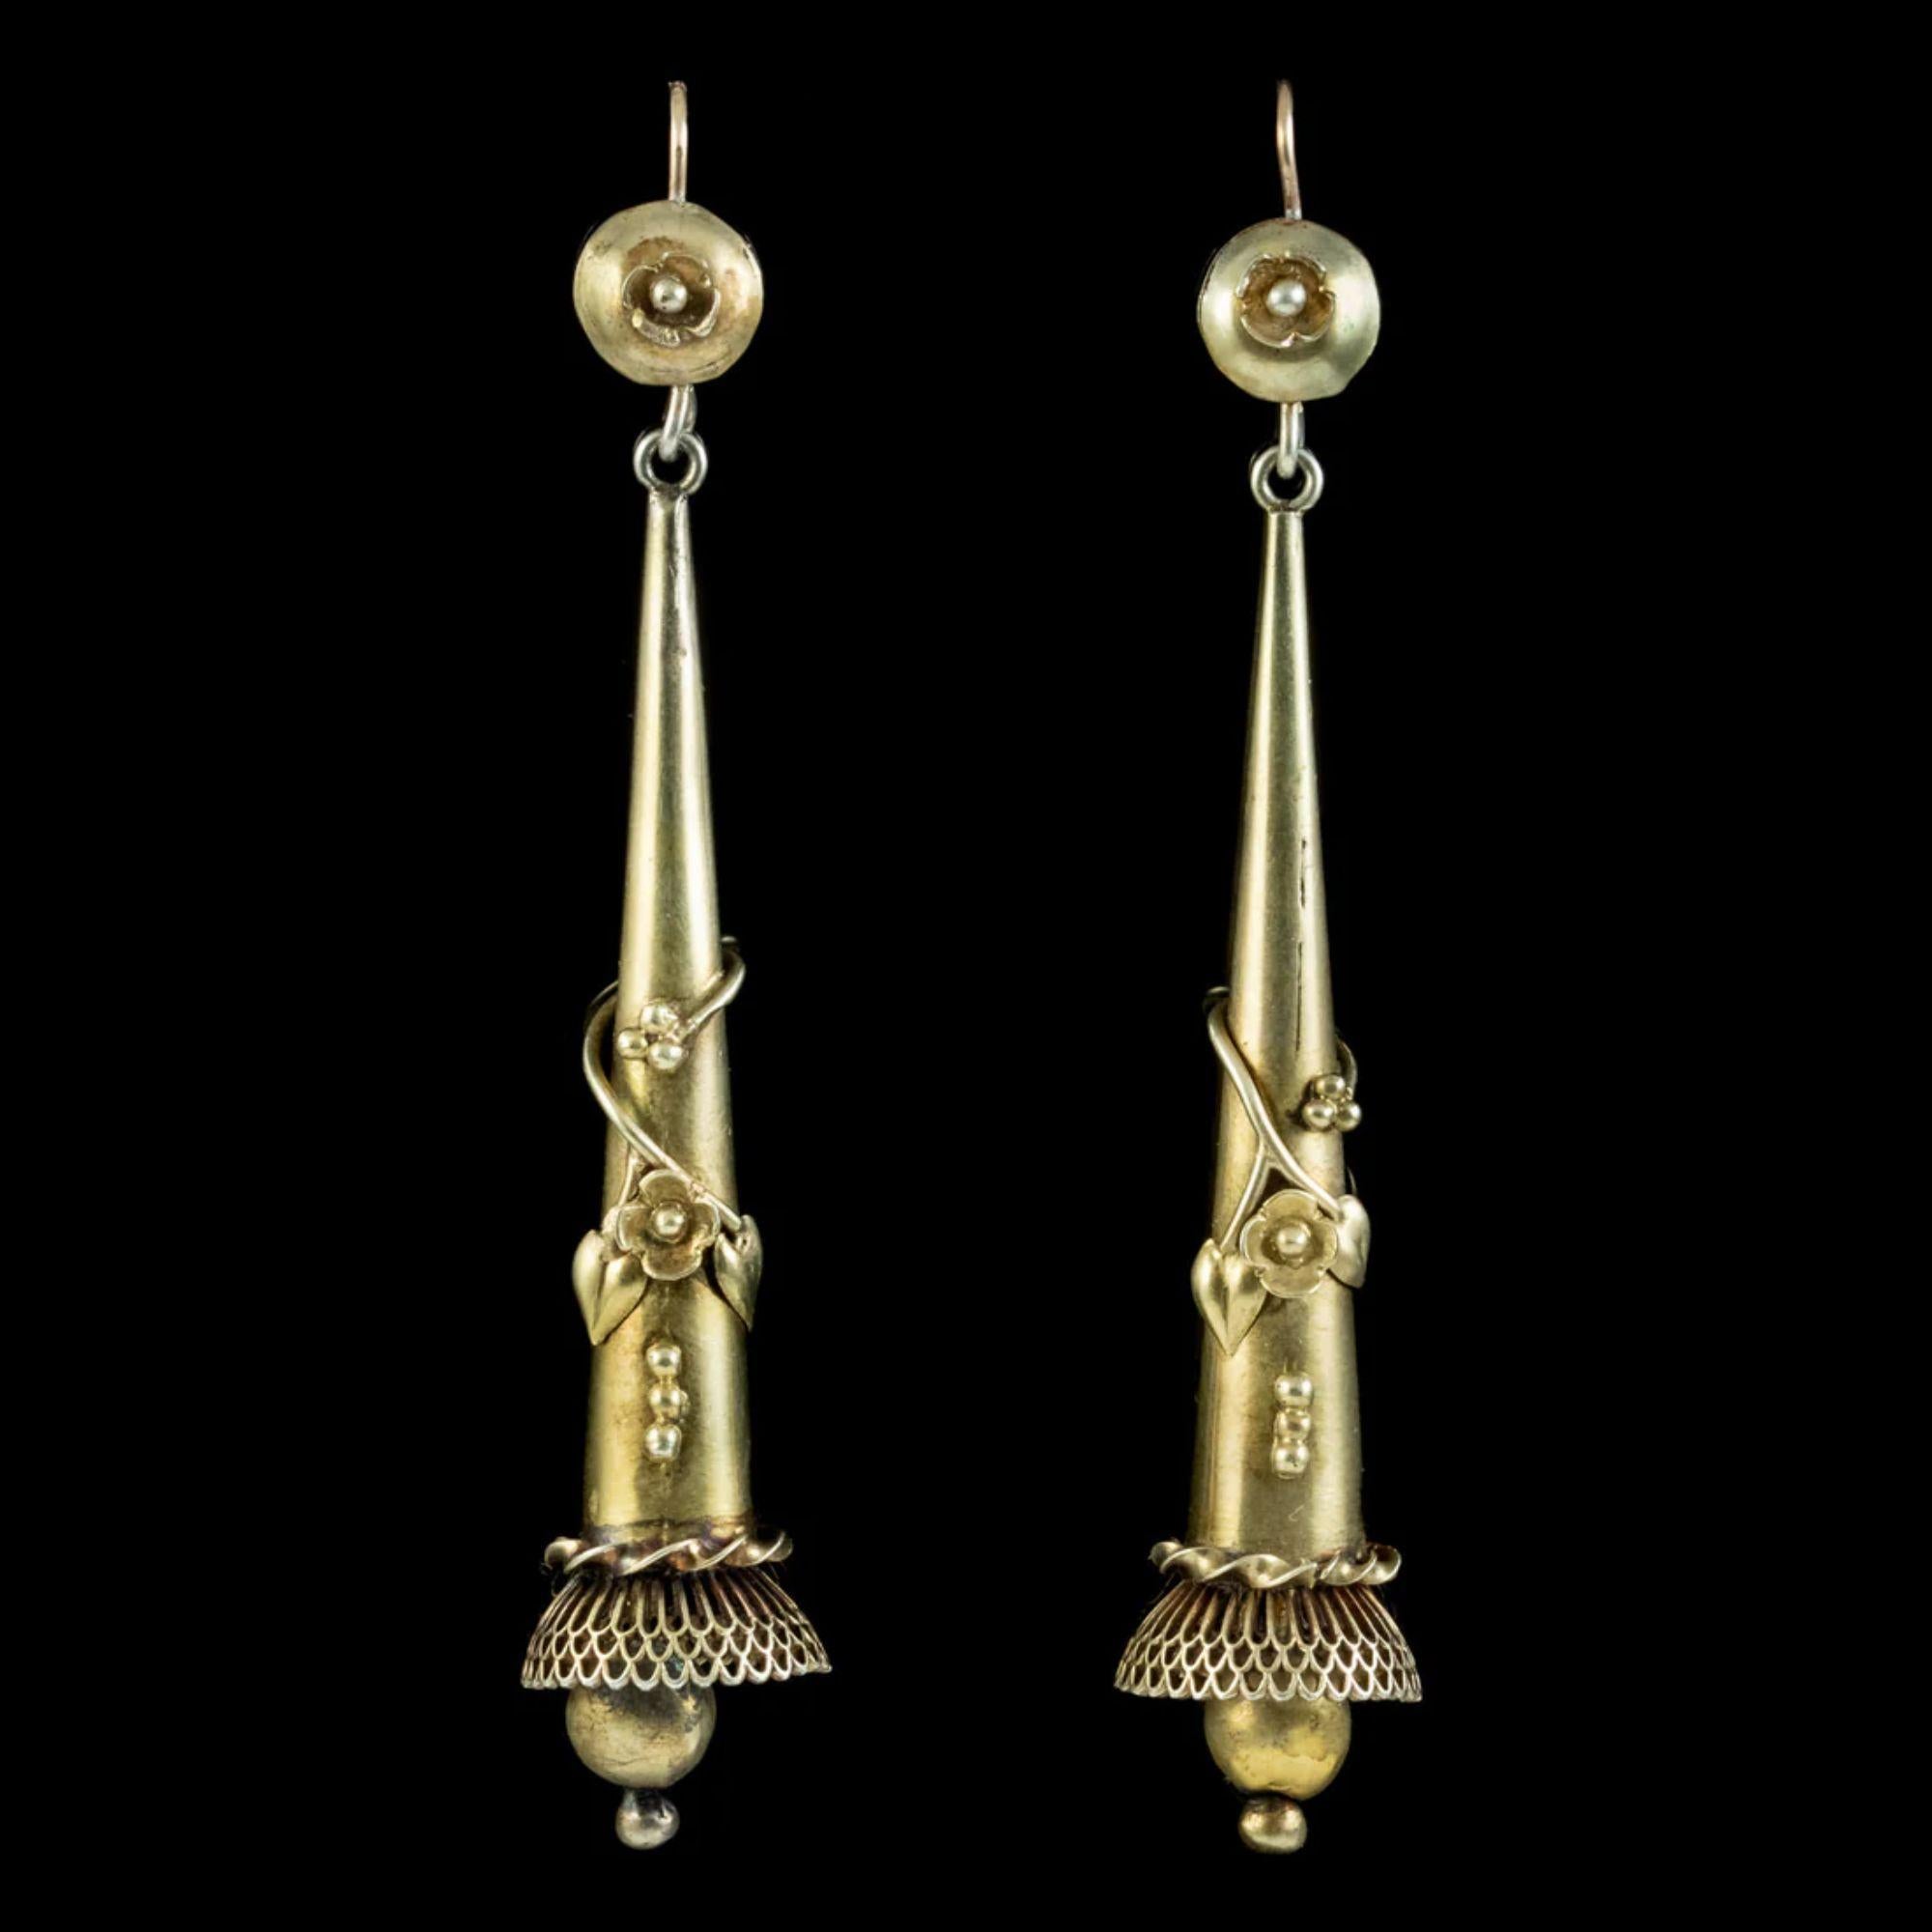 Ein großartiges Paar antiker georgianischer Tropfenohrringe aus dem frühen 19. Beide weisen wunderschöne florale Metallarbeiten auf, die sich um jeden langen Tropfer wickeln und zu einem verschnörkelten, fransigen unteren Teil mit einem goldenen